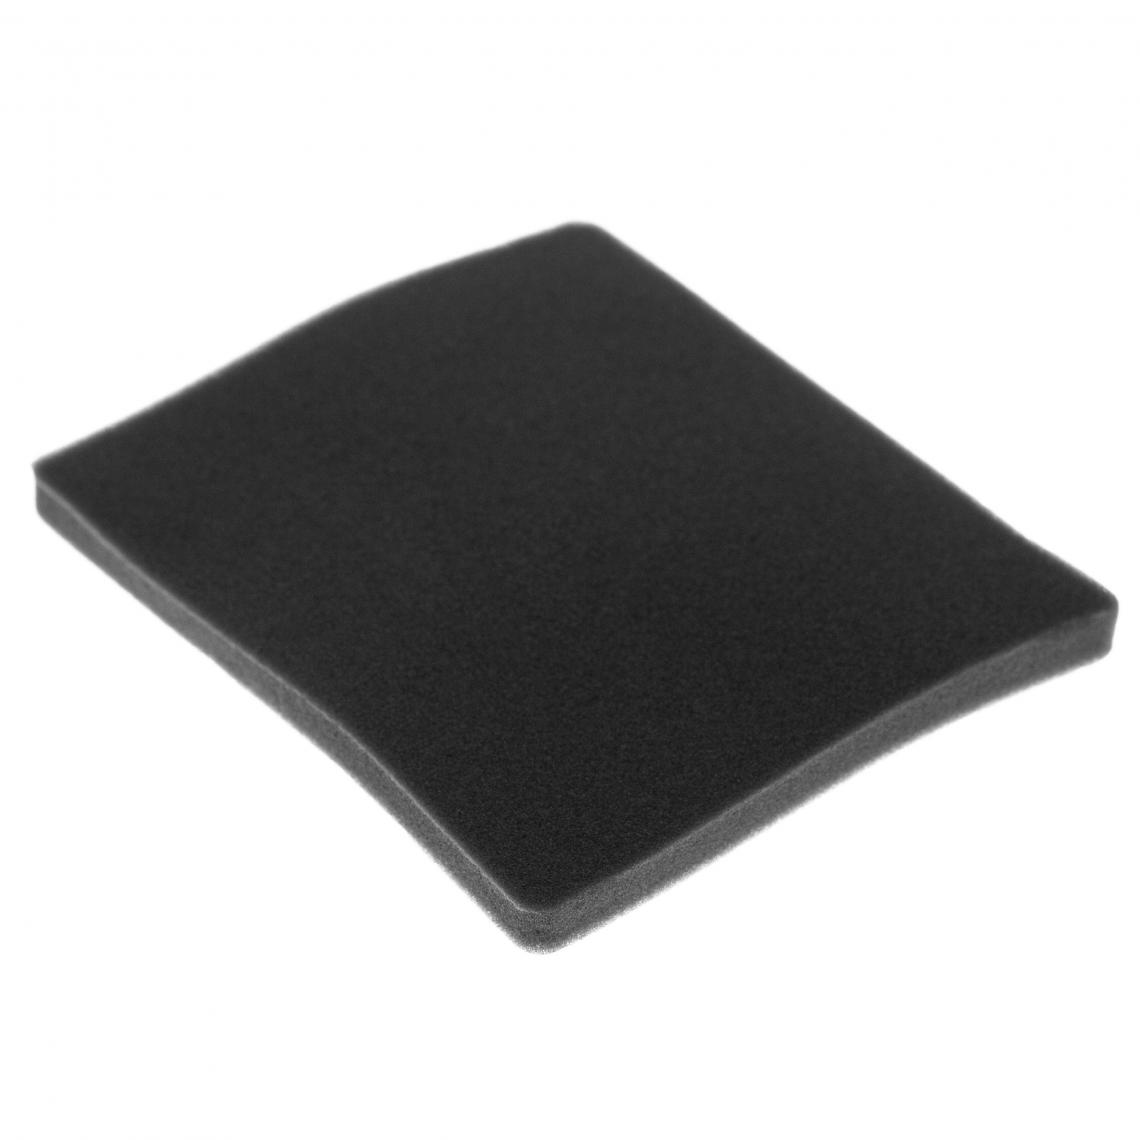 Vhbw - vhbw Filtre compatible avec Electrolux ZJM6810 (903151543) aspirateur - filtre de sortie d'air (filtre éponge), noir - Accessoire entretien des sols